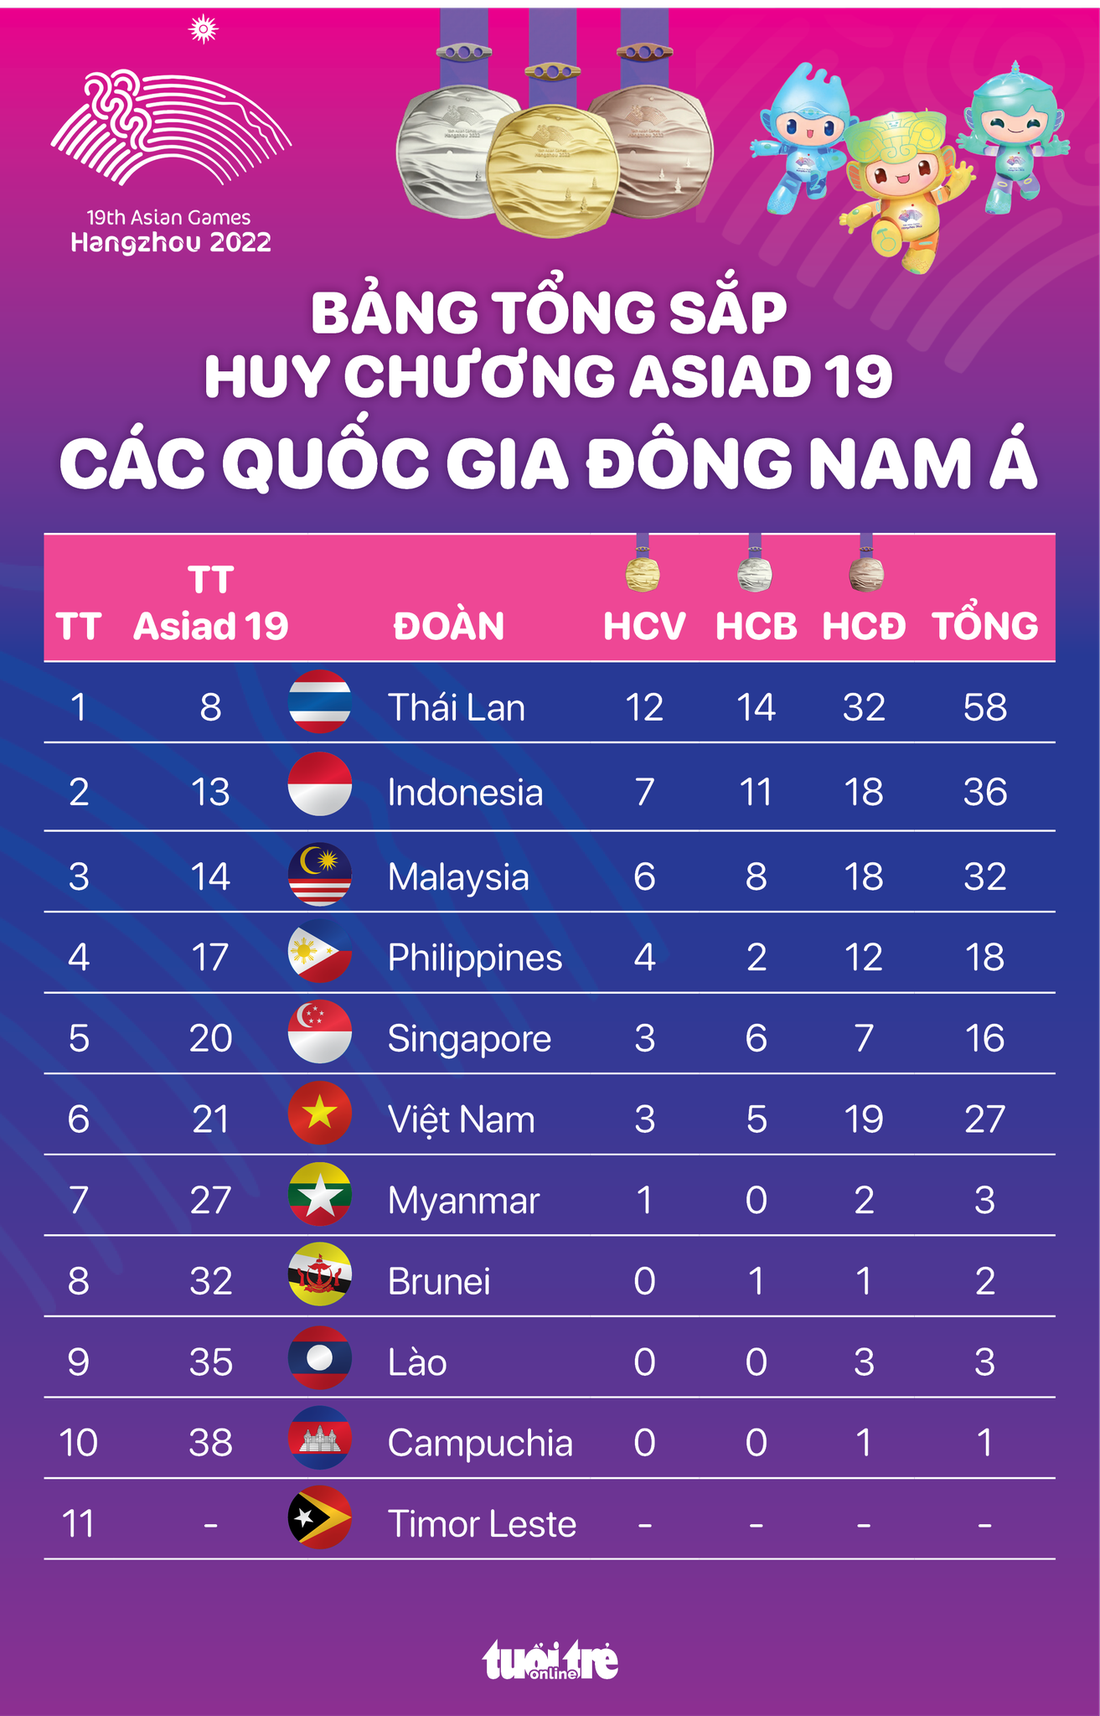 Việt Nam đứng thứ 6 Đông Nam Á trên bảng tổng sắp huy chương Asiad 19 - Đồ họa: AN BÌNH